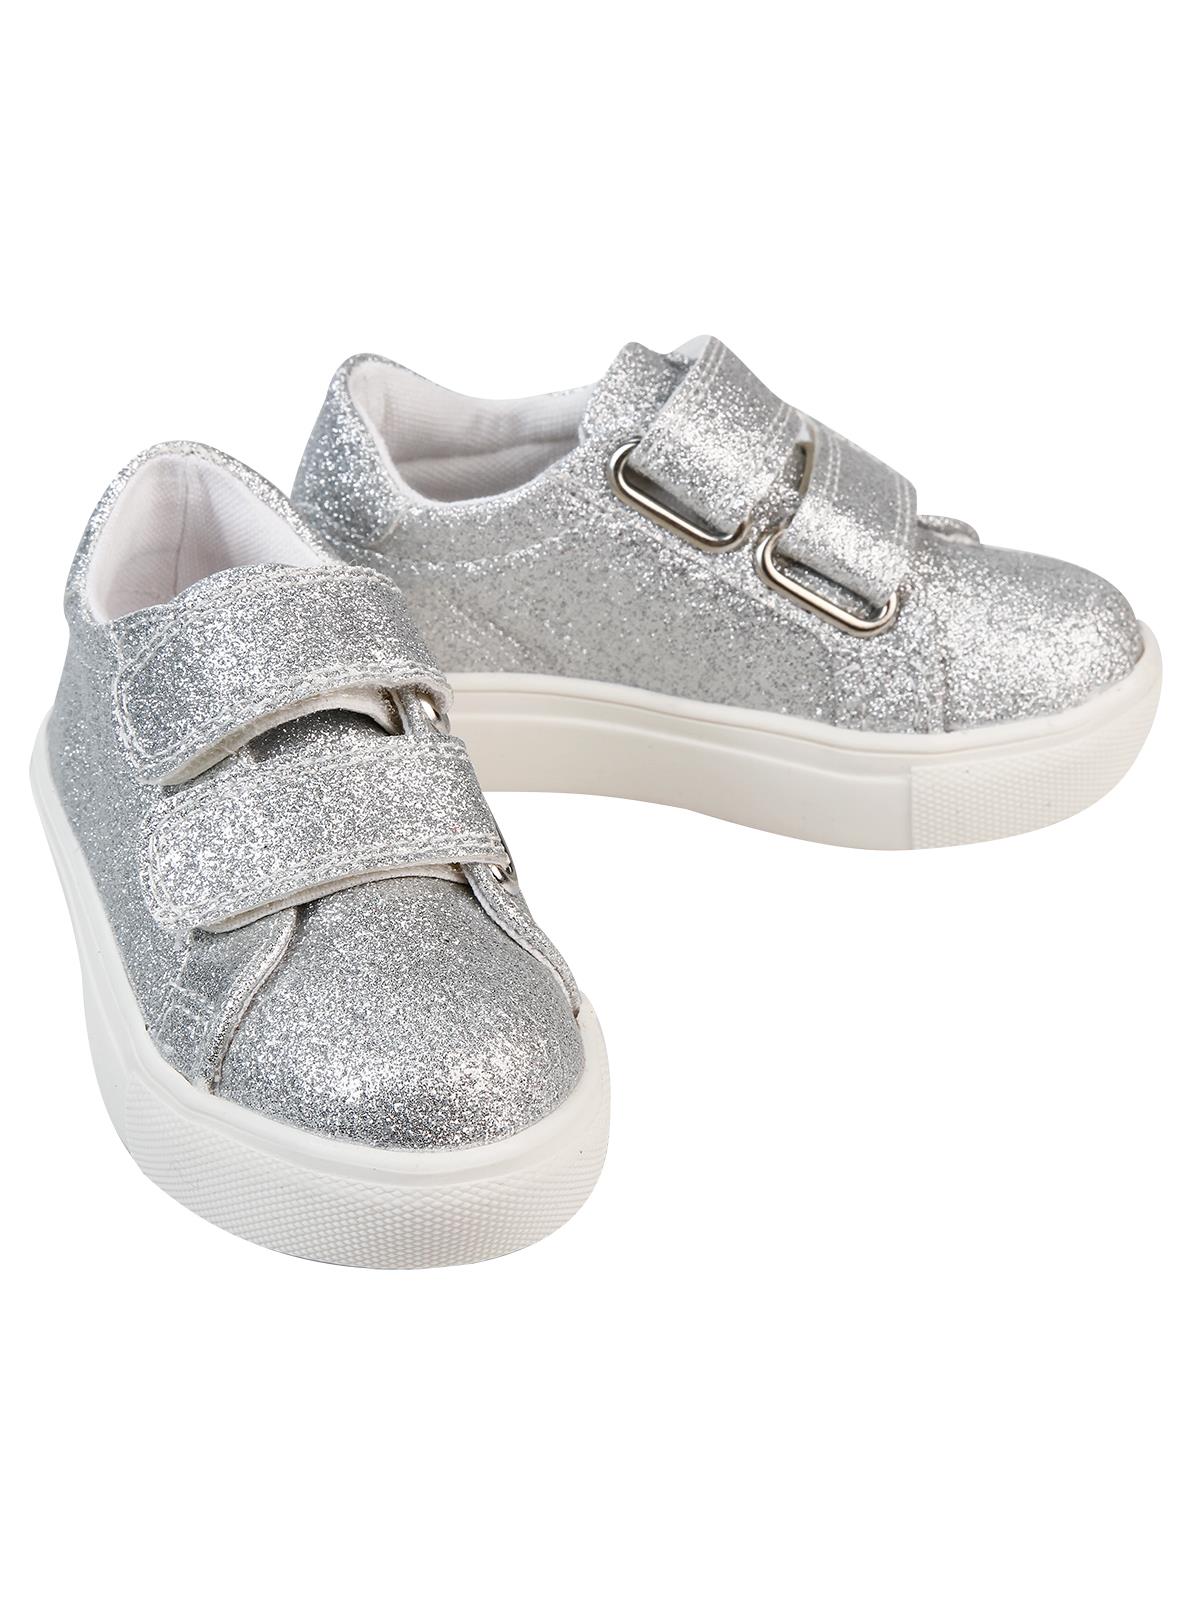 Civil Kız Çocuk Spor Ayakkabı 22-30 Numara Gümüş